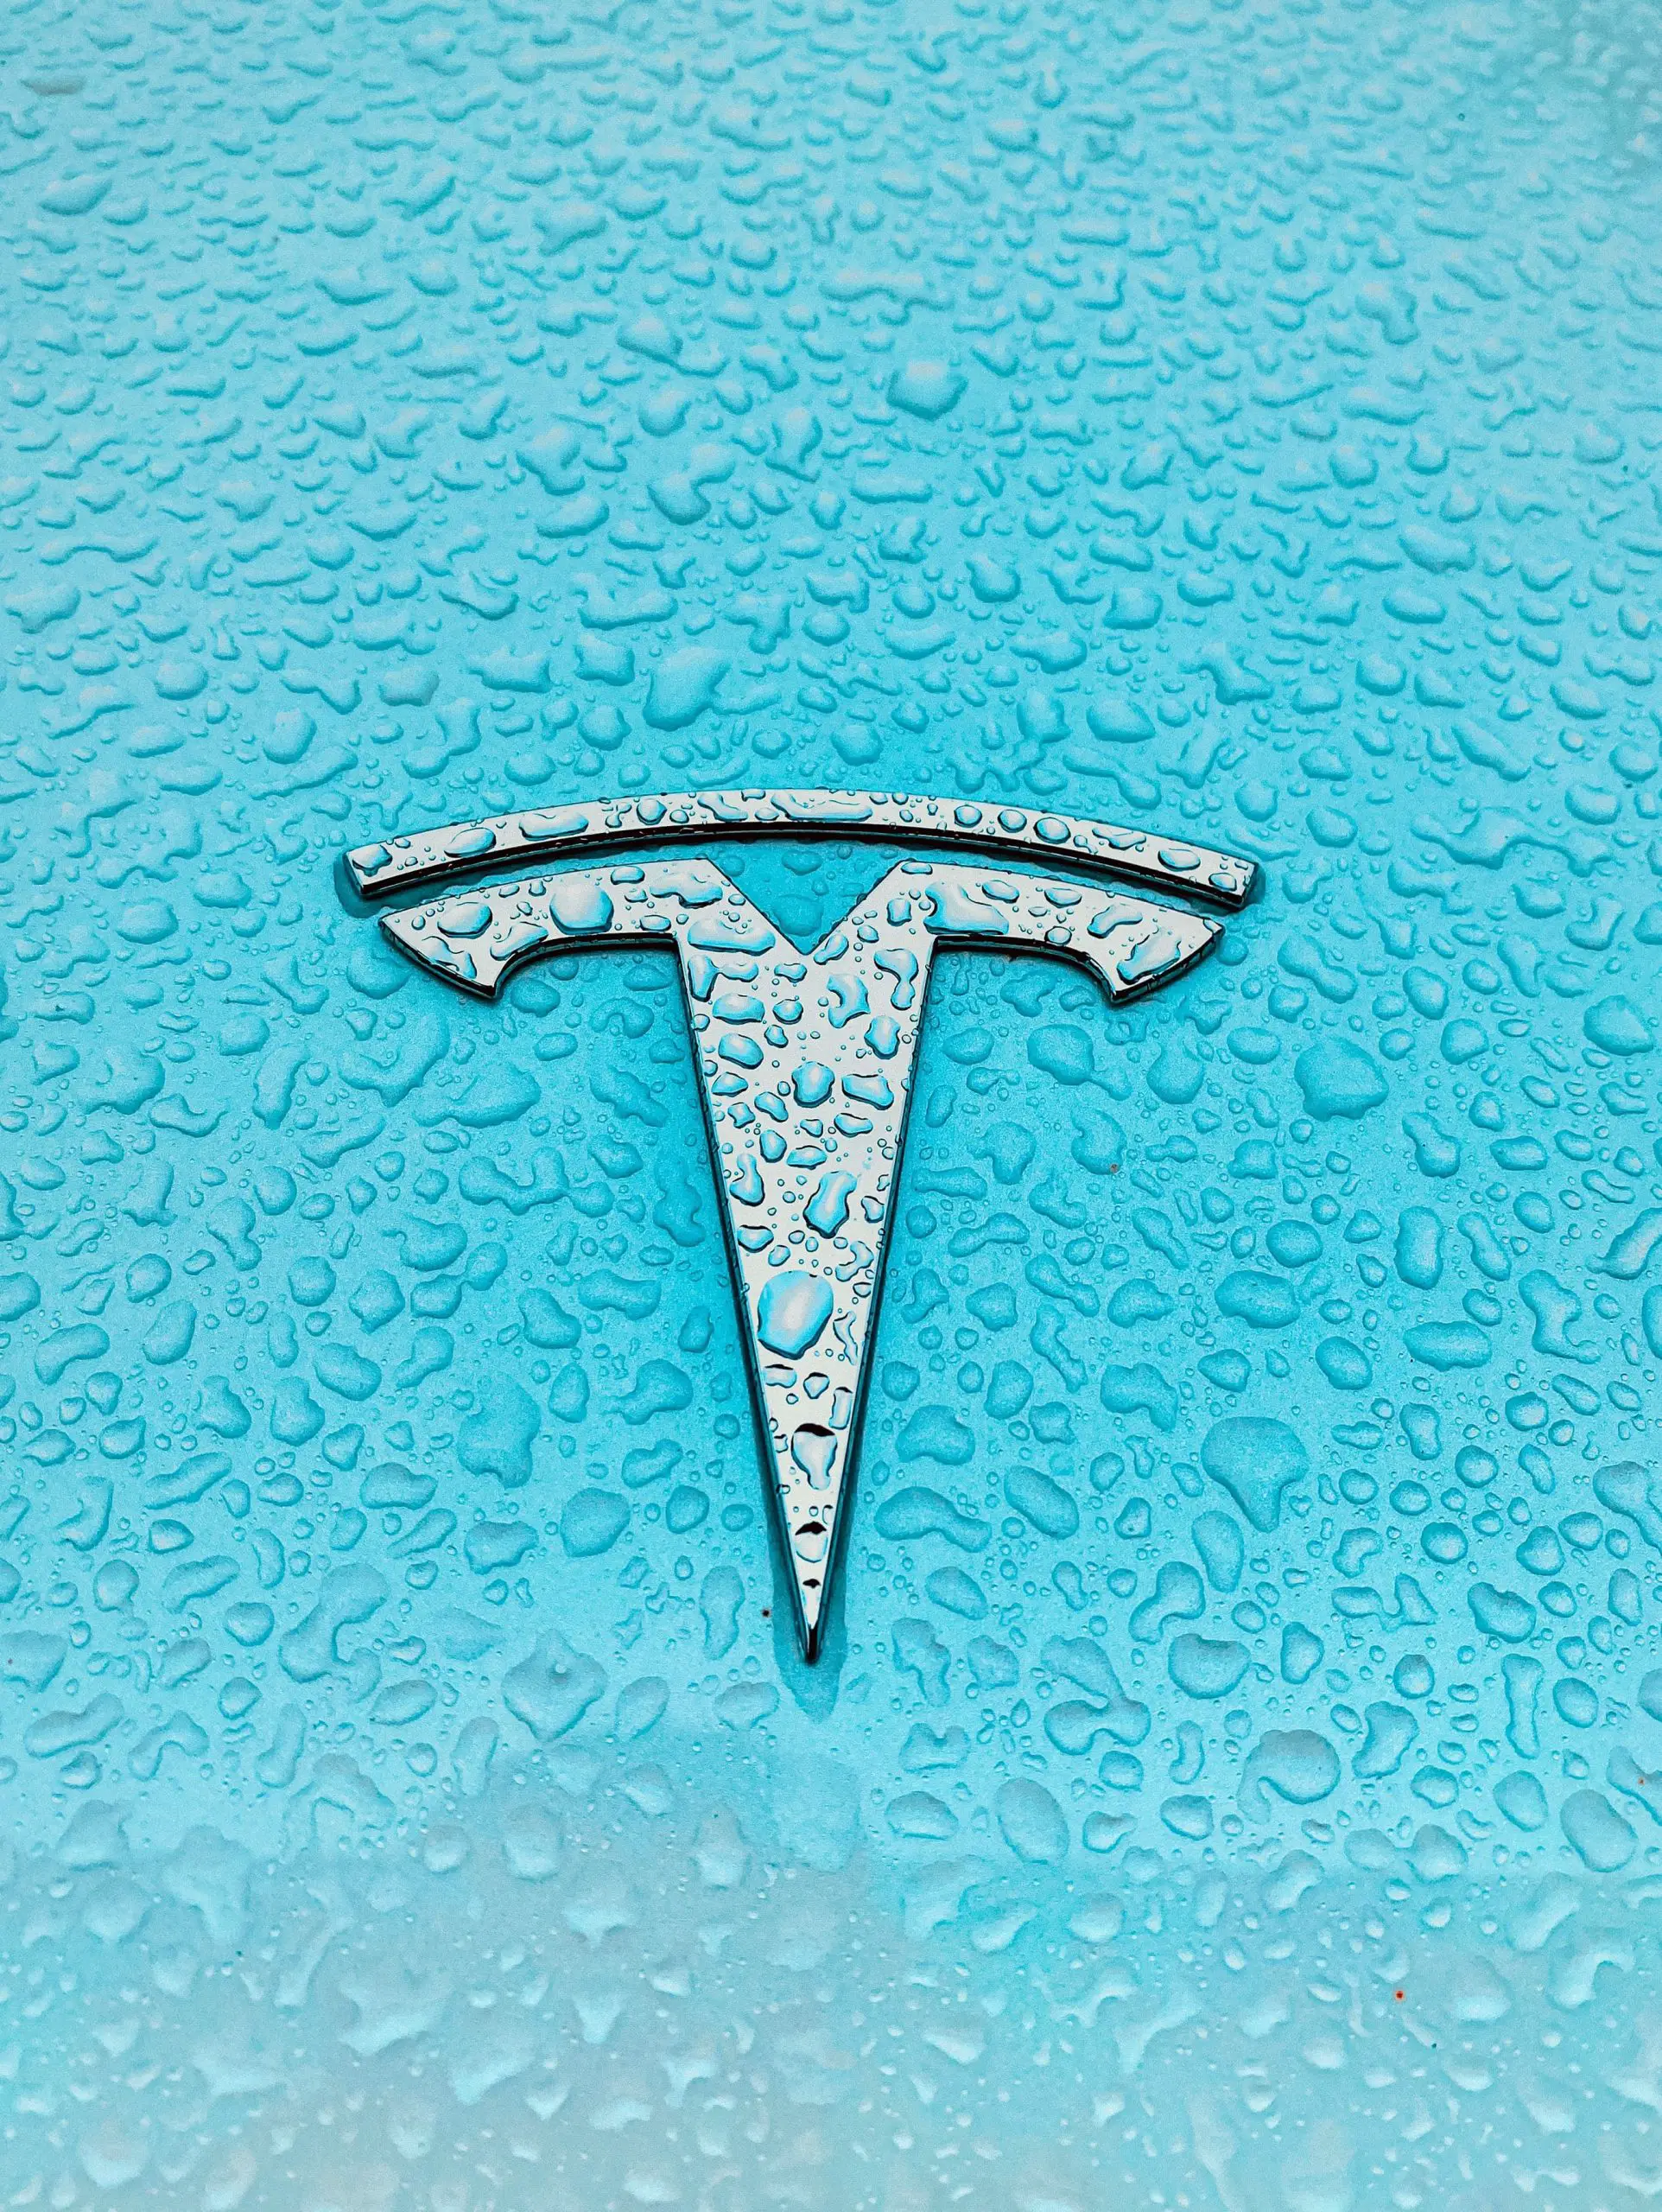 Are Tesla Cars Waterproof?